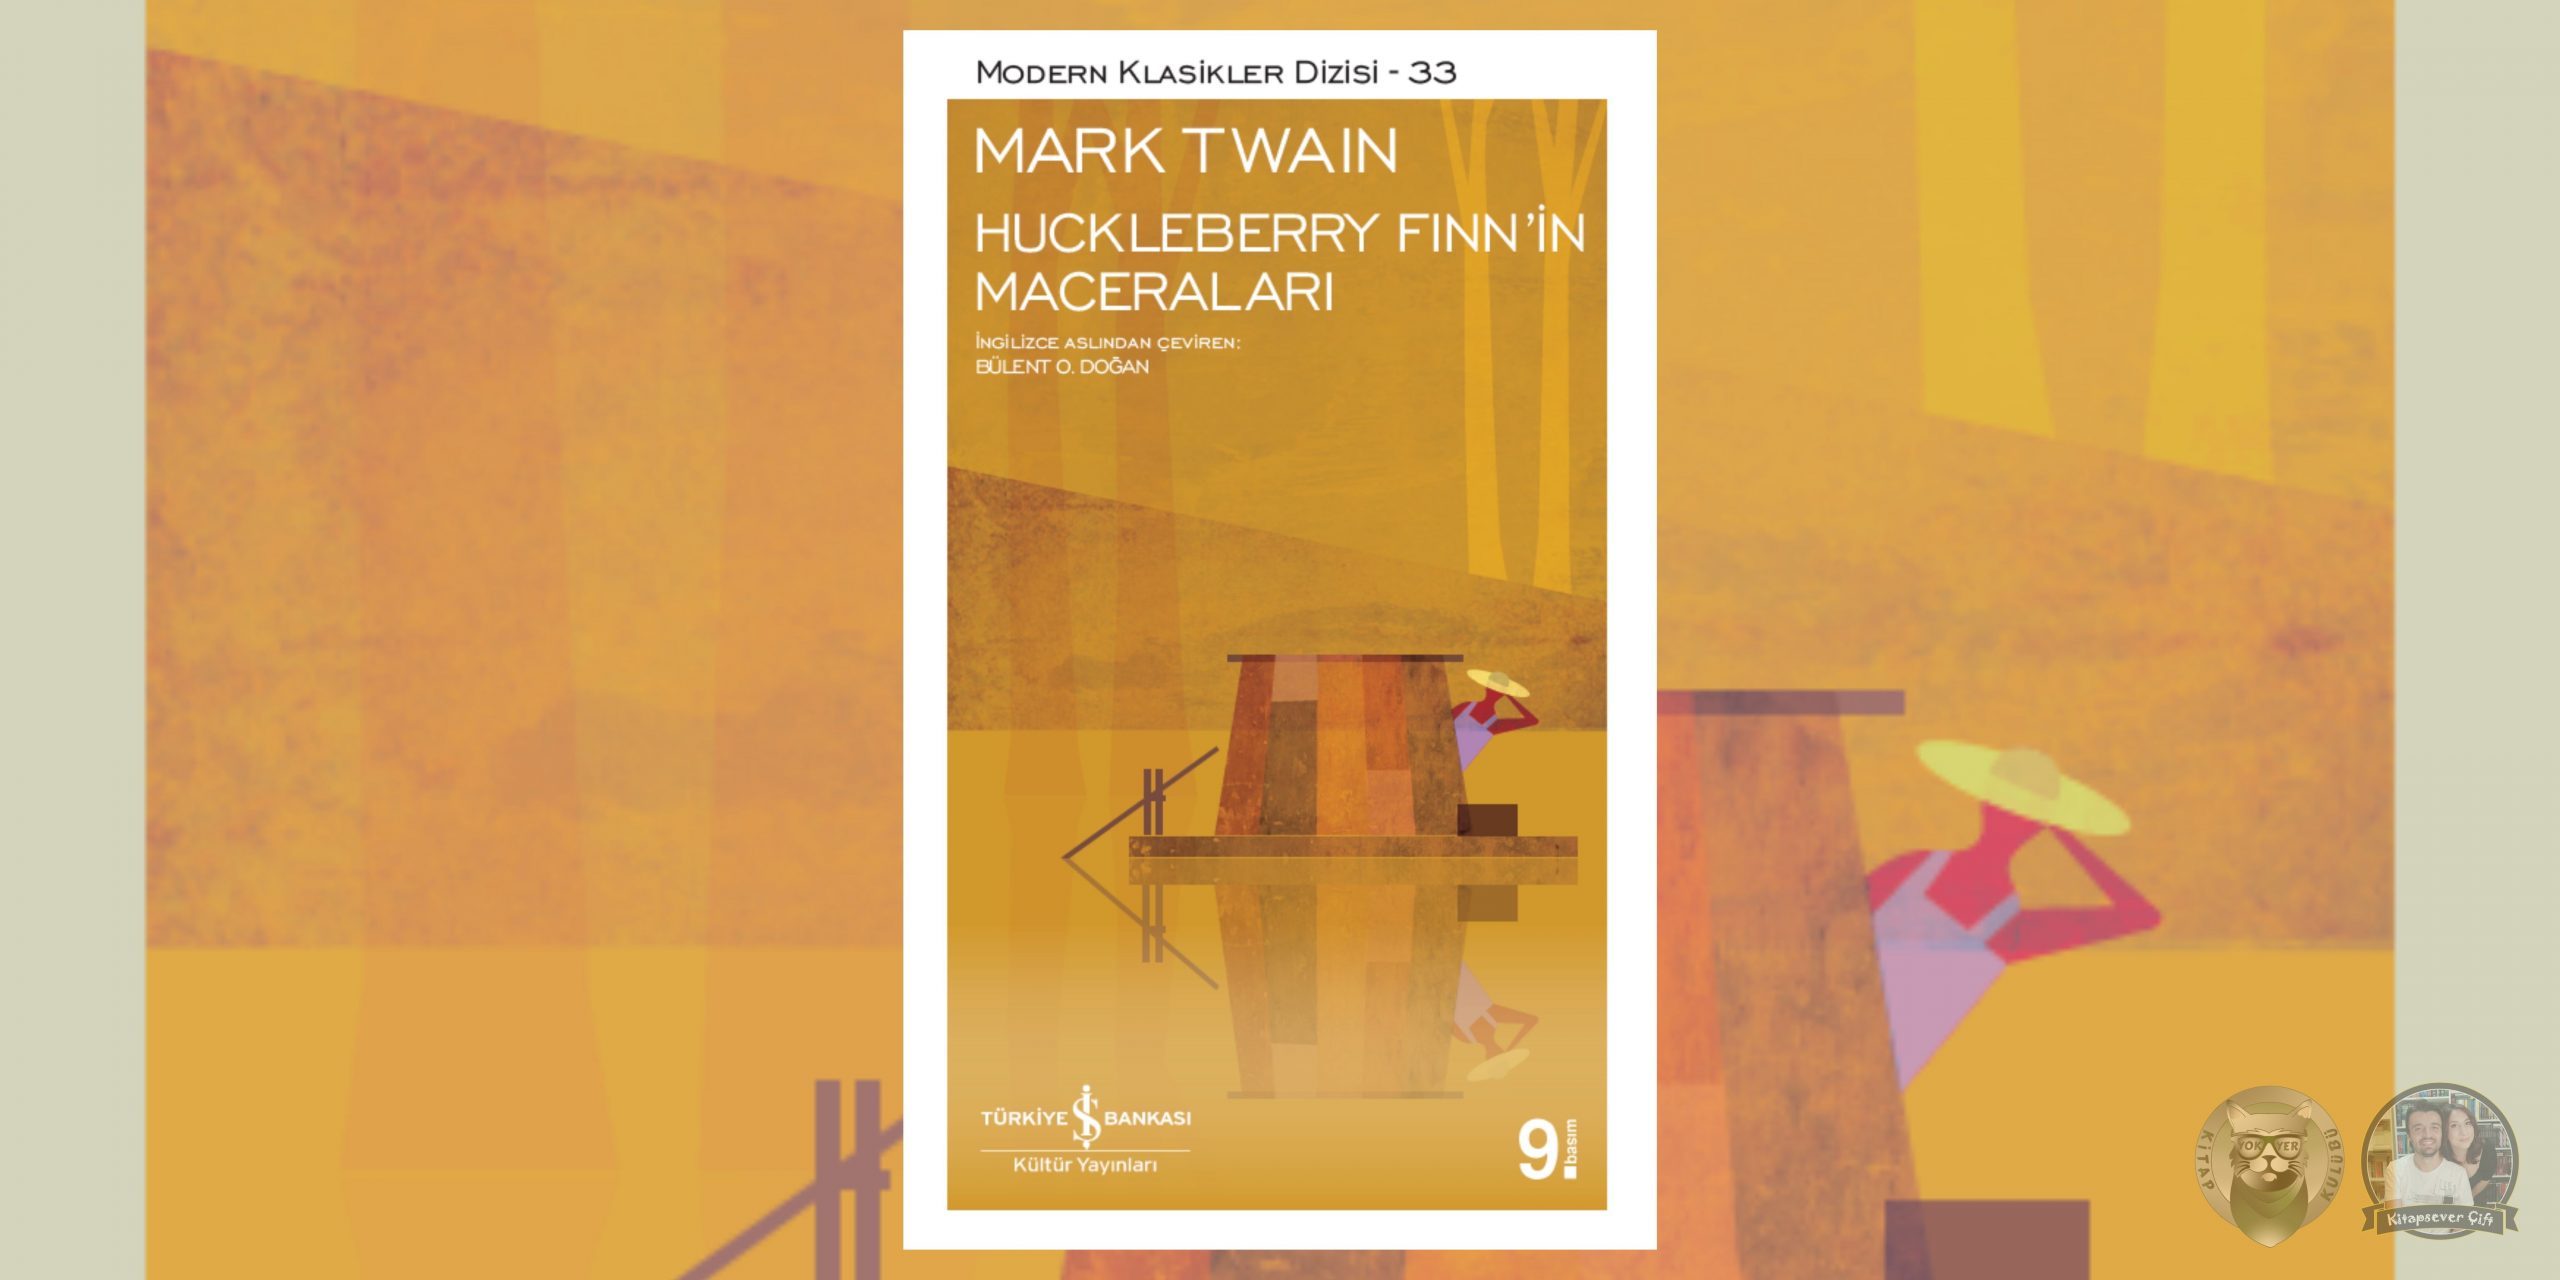 huckleberry finn’in maceraları hayranlarına kitap önerileri 1 – huckleberry finnin maceralari scaled